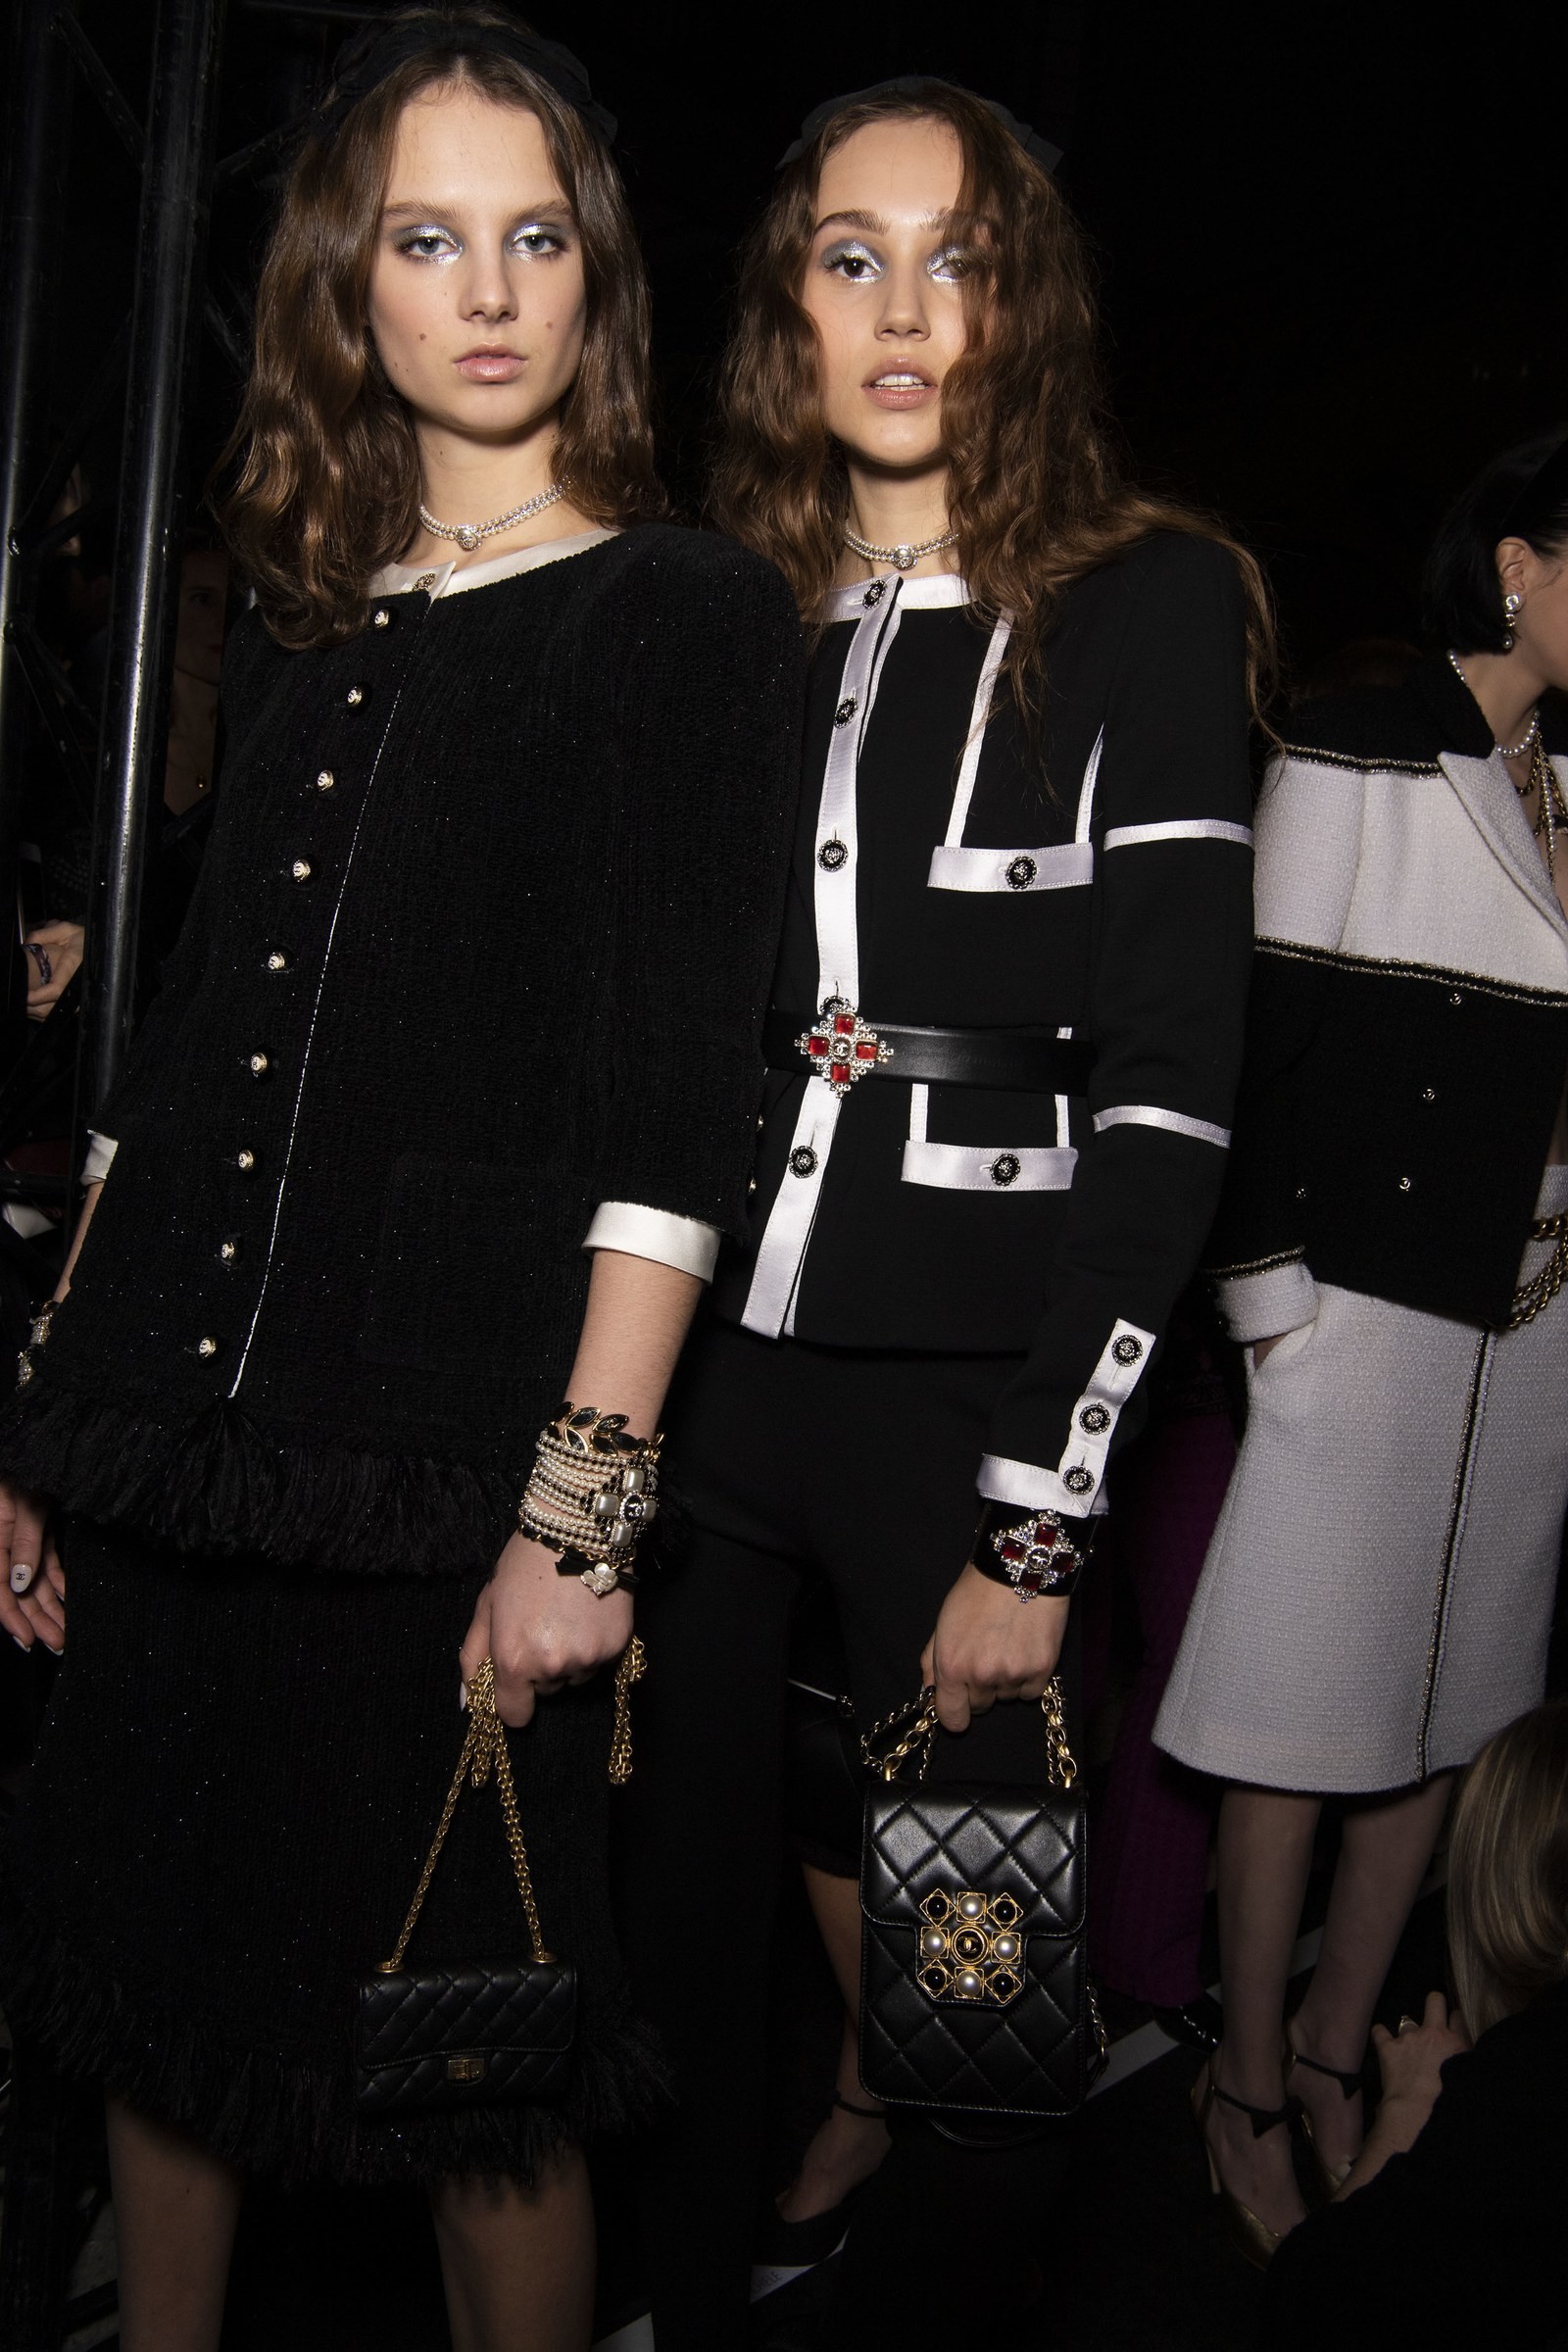 5 dicas de beleza para as festas de fim de ano saídas da passarela de Métiers d'art da Chanel (Foto: Jason Lloyd-Evans/ Vogue Runway)